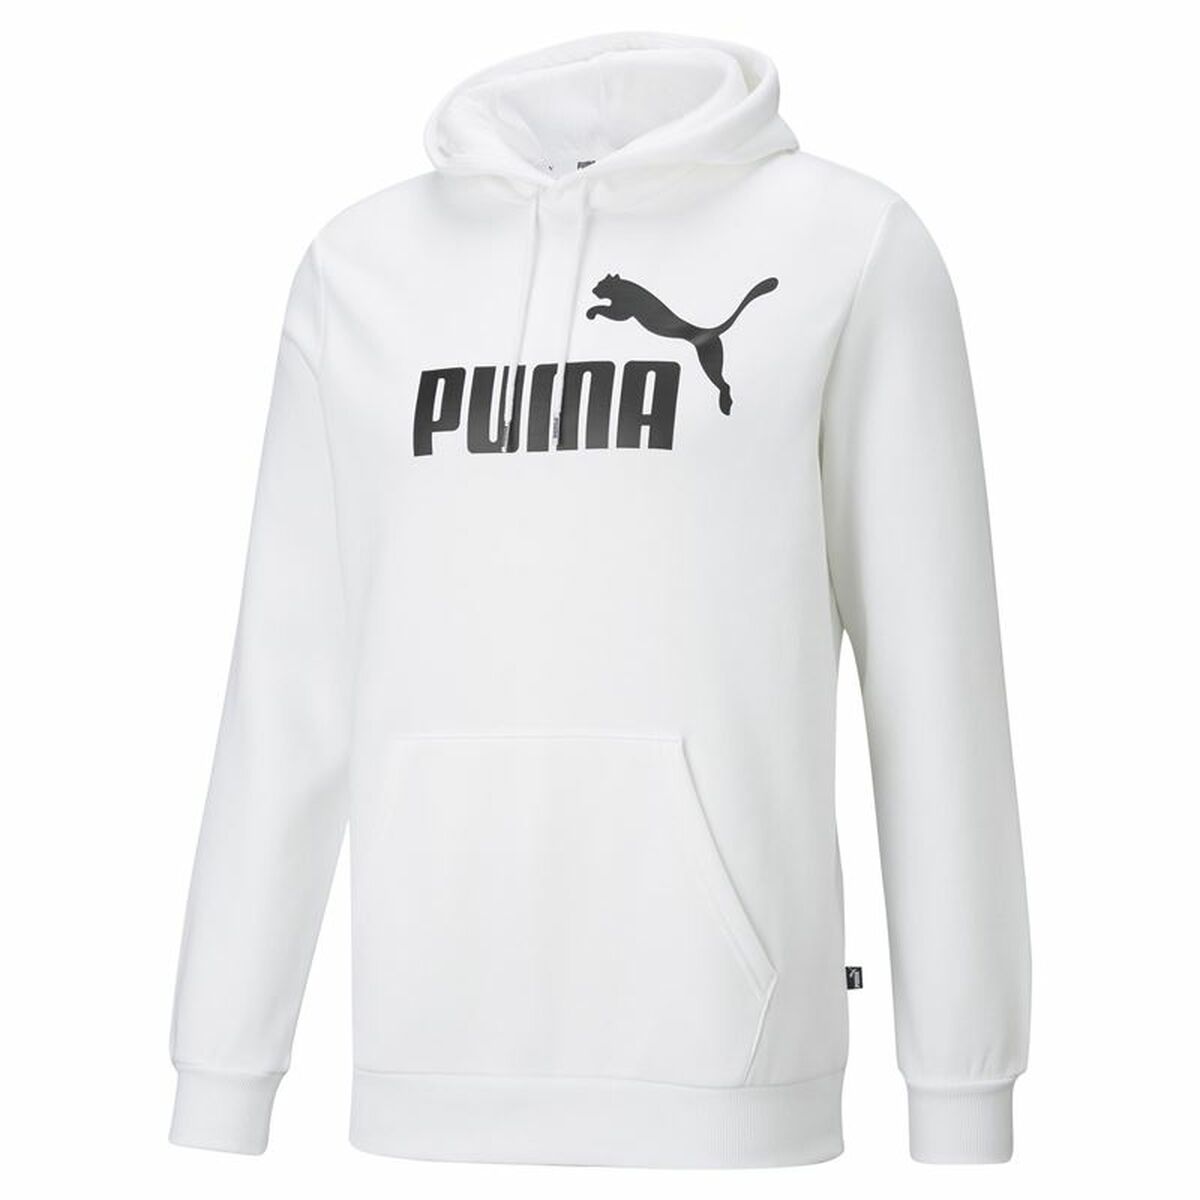 Kaufe Herren Sweater mit Kapuze Puma Ess Big Logo Weiß bei AWK Flagship um € 63.00